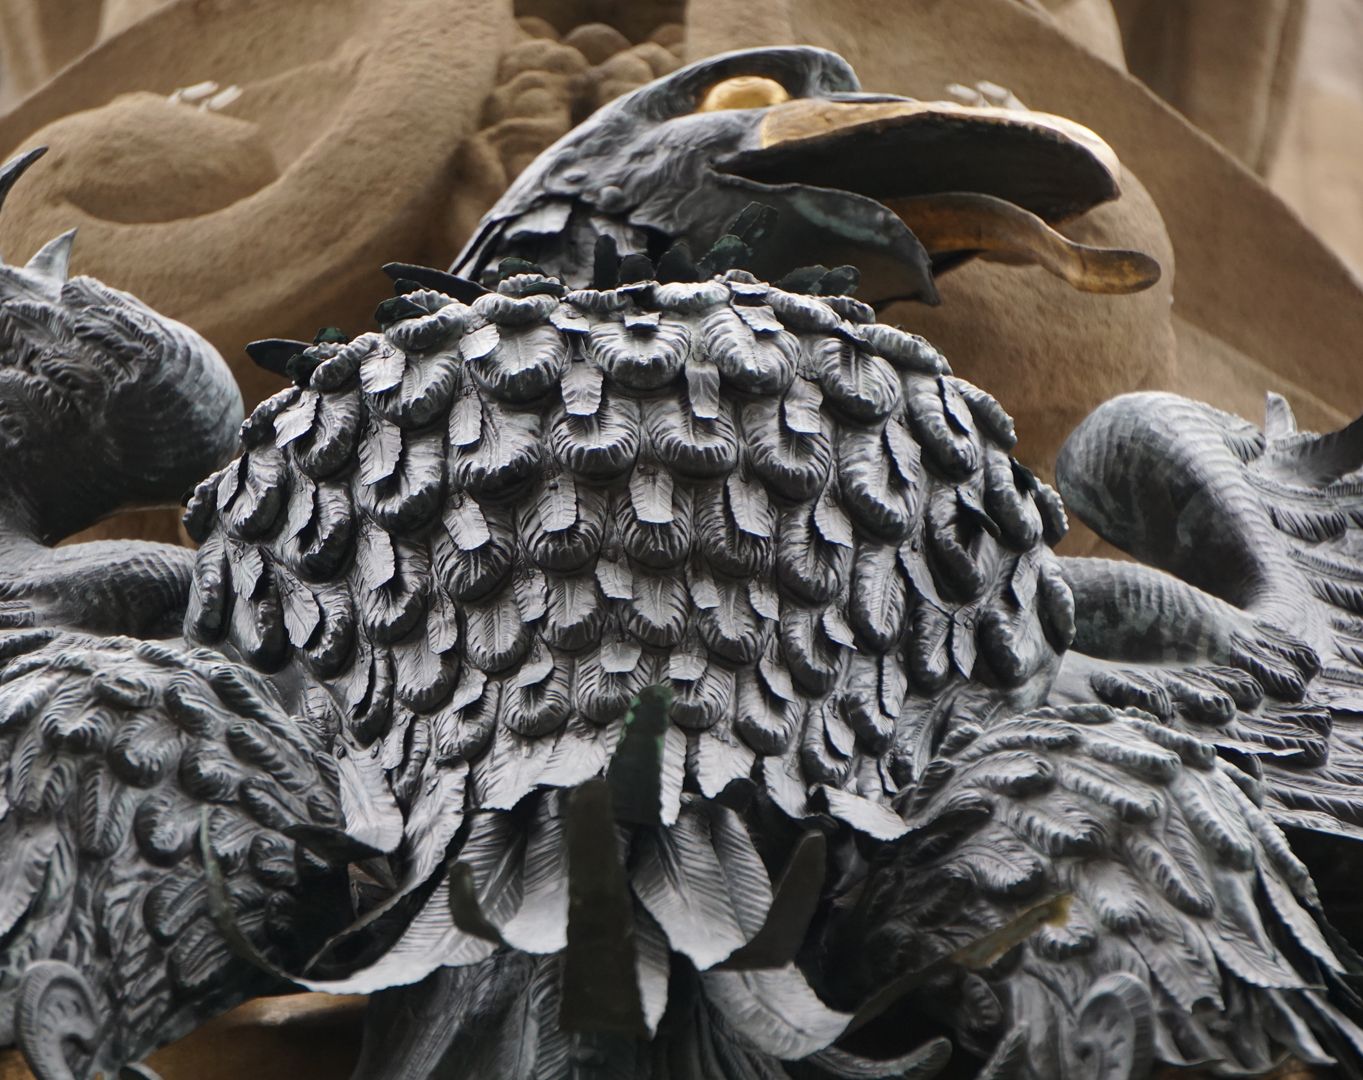 Imperial Eagle Eagle's breast plumage